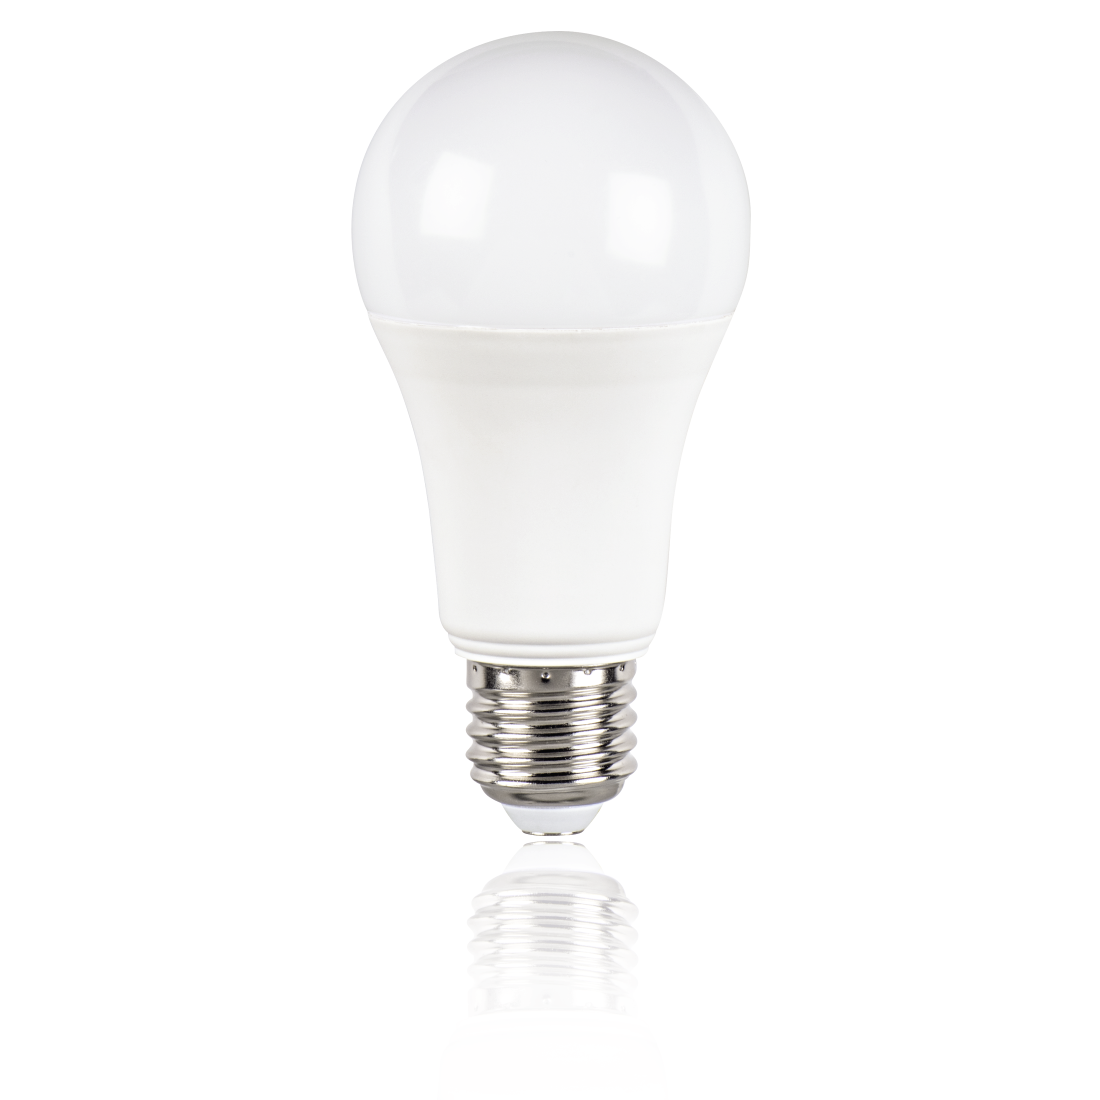 abx2 High-Res Image 2 - Xavax, Ampoule LED, E27, 1521lm rempl. ampoule incandes. 100W, lumière du jour